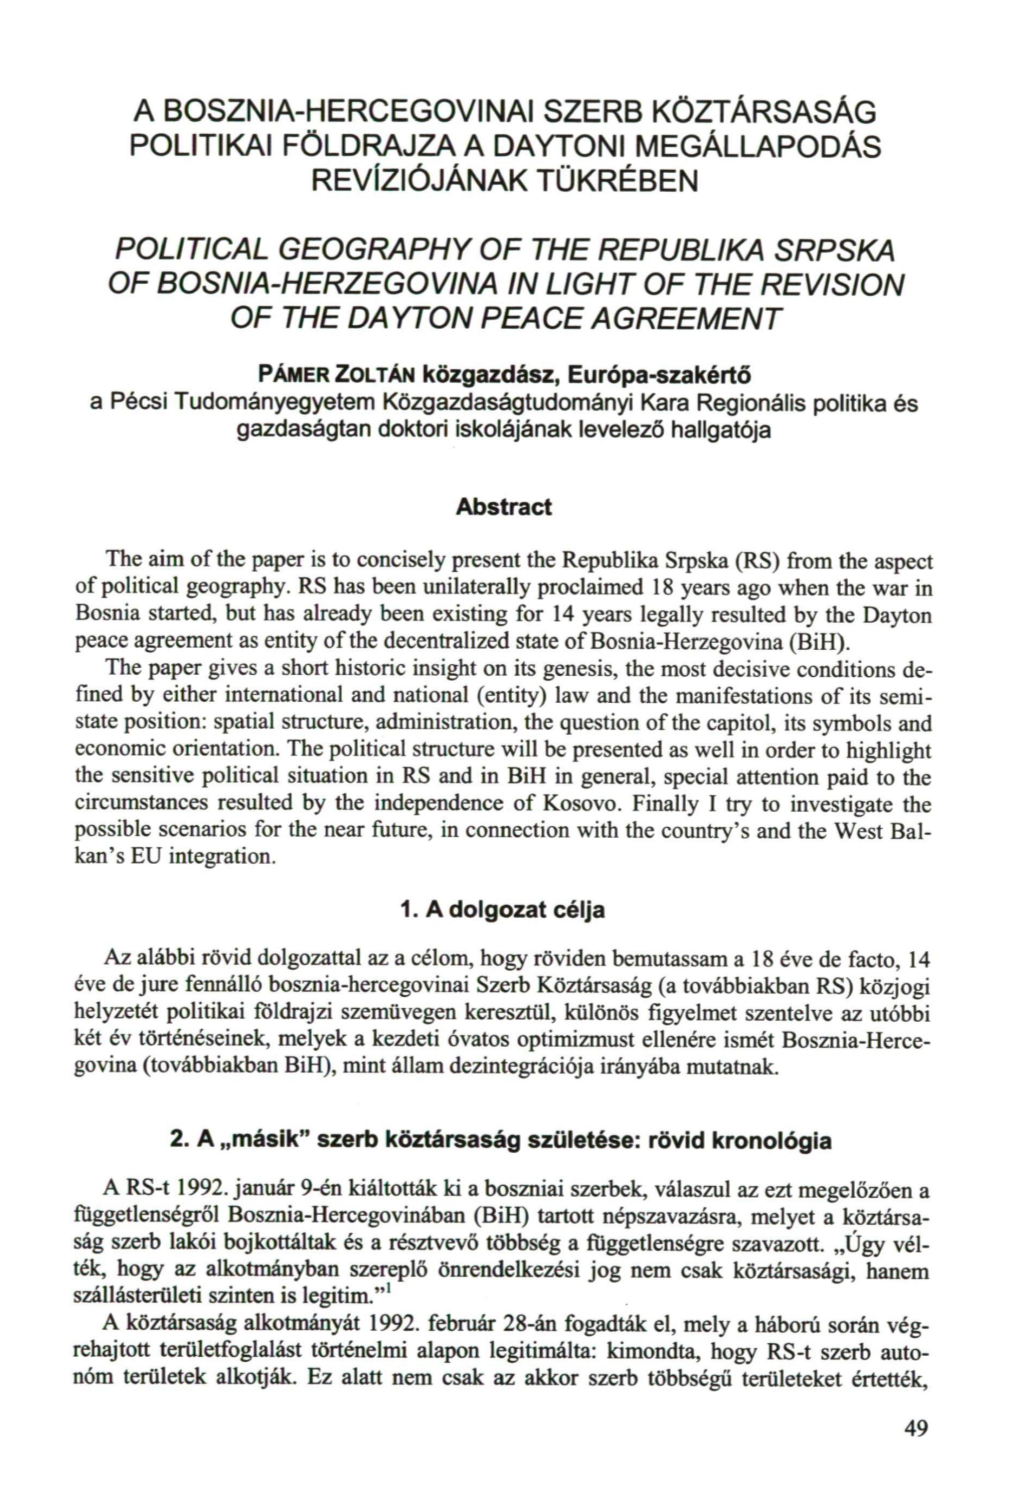 A Bosznia-Hercegovinai Szerb Köztársaság Politikai Földrajza a Daytoni Megállapodás Revíziójának Tükrében